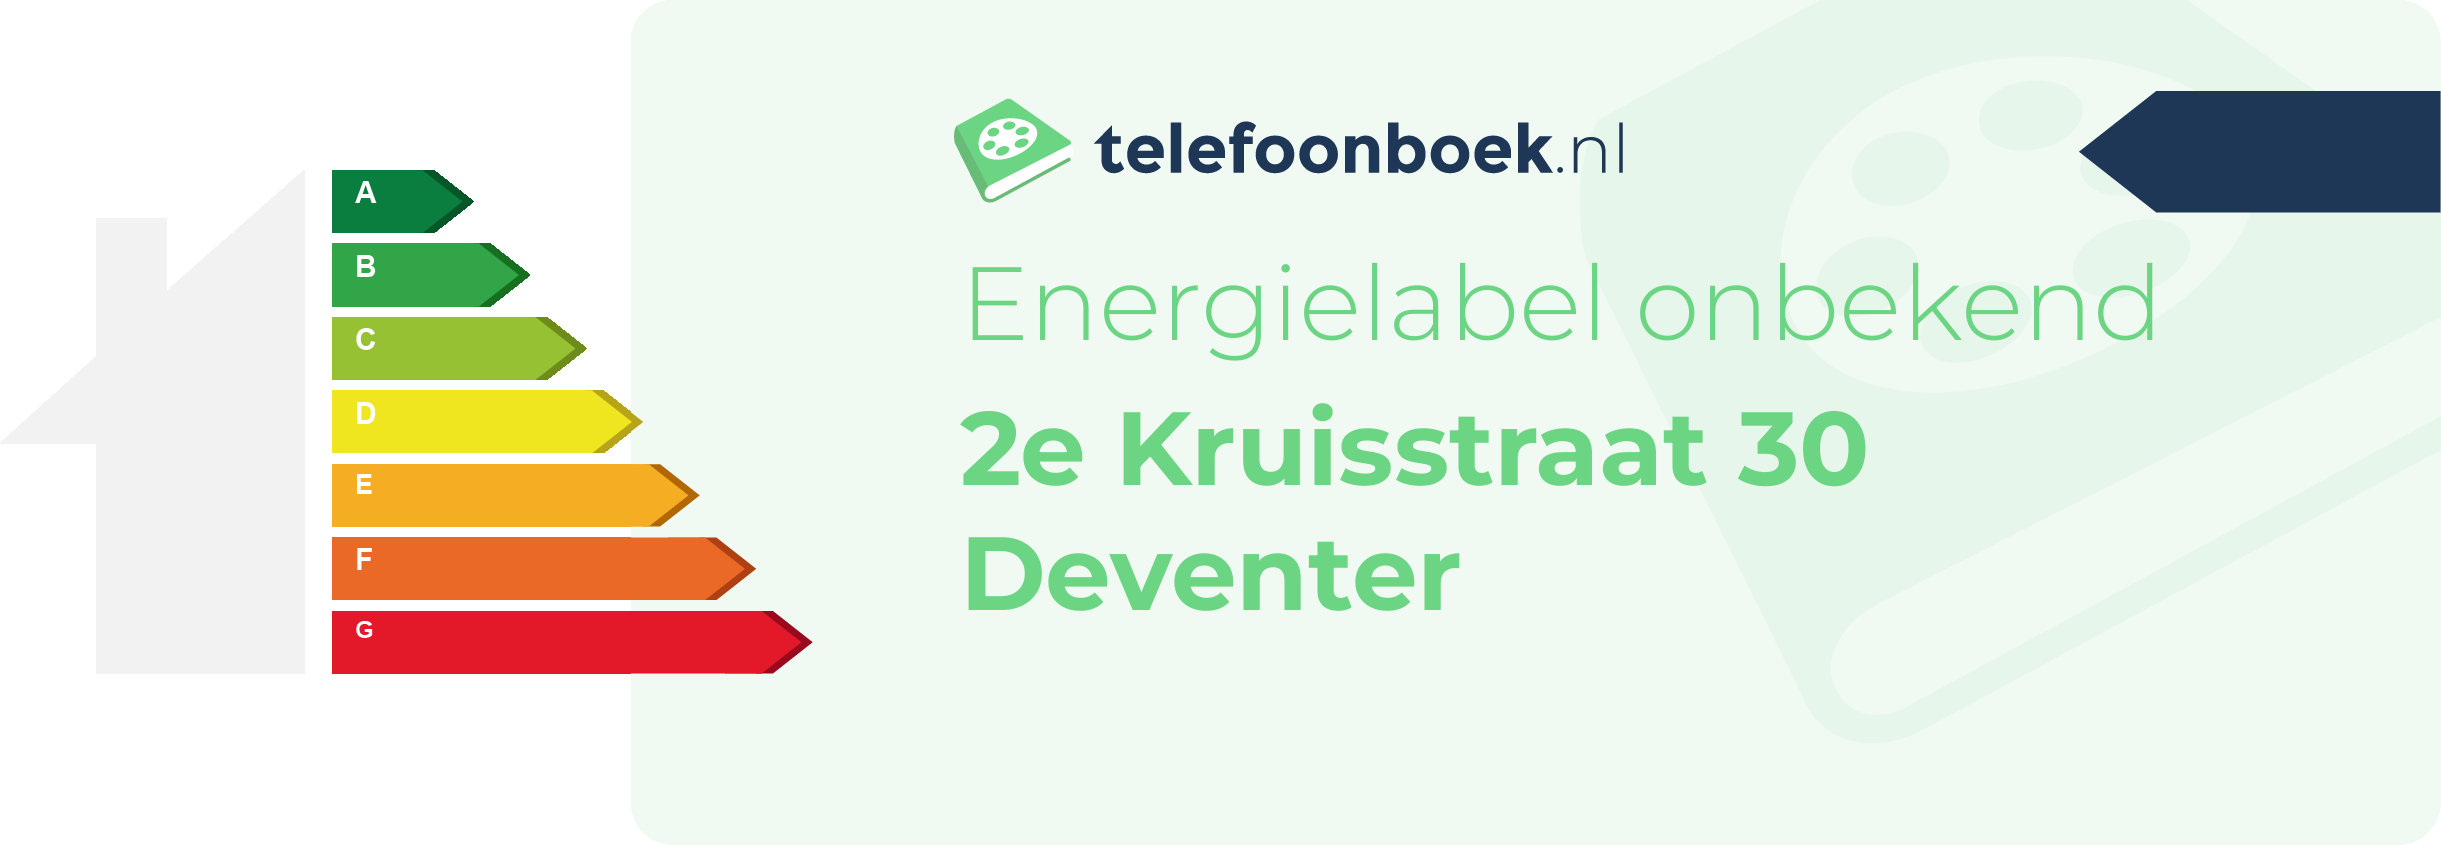 Energielabel 2e Kruisstraat 30 Deventer